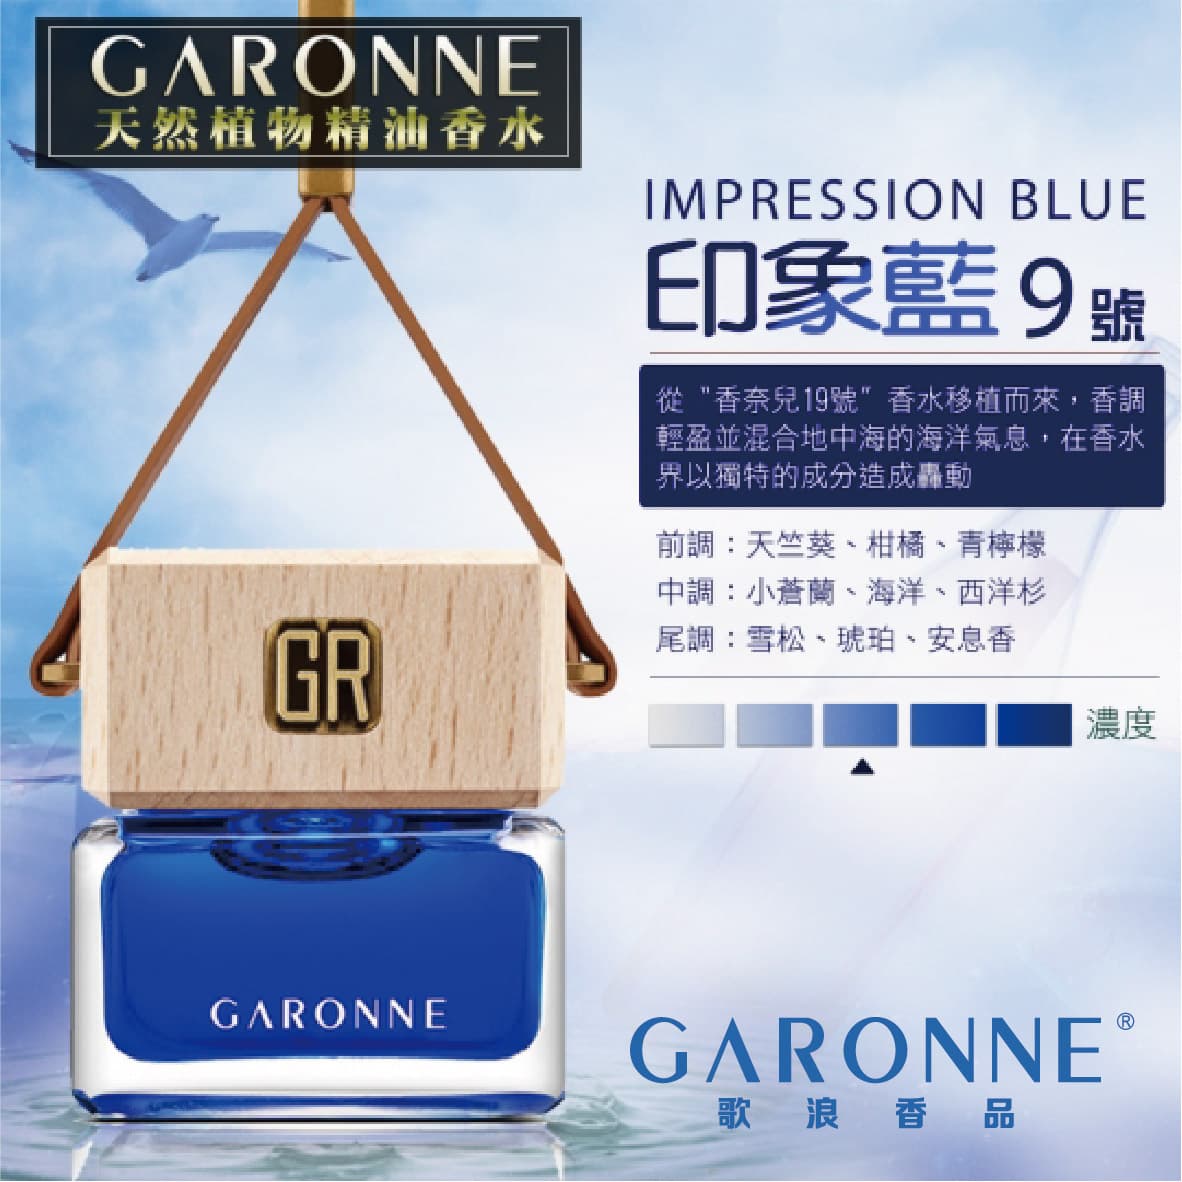 真便宜 GARONNE歌浪香品 法國吊式香水(9號-印象藍)6ml